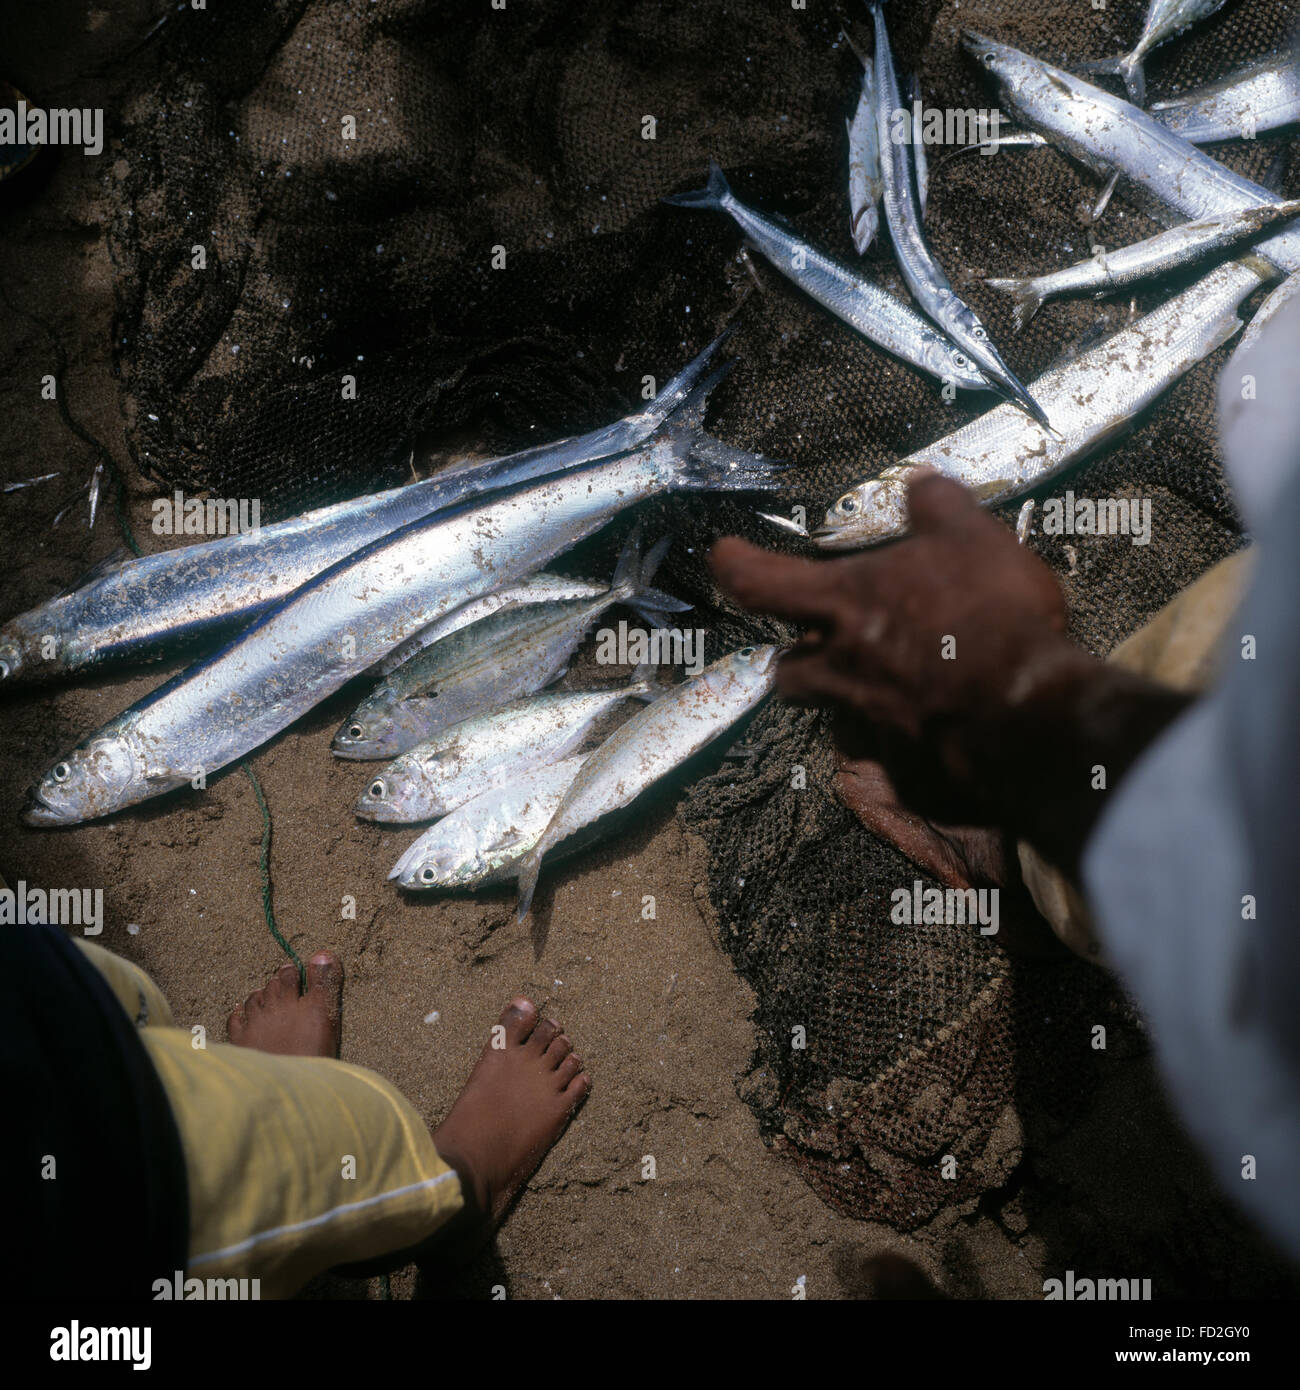 Fish caught by hand nets after the Tsunami that hit Beruwala Sri lanka. Stock Photo